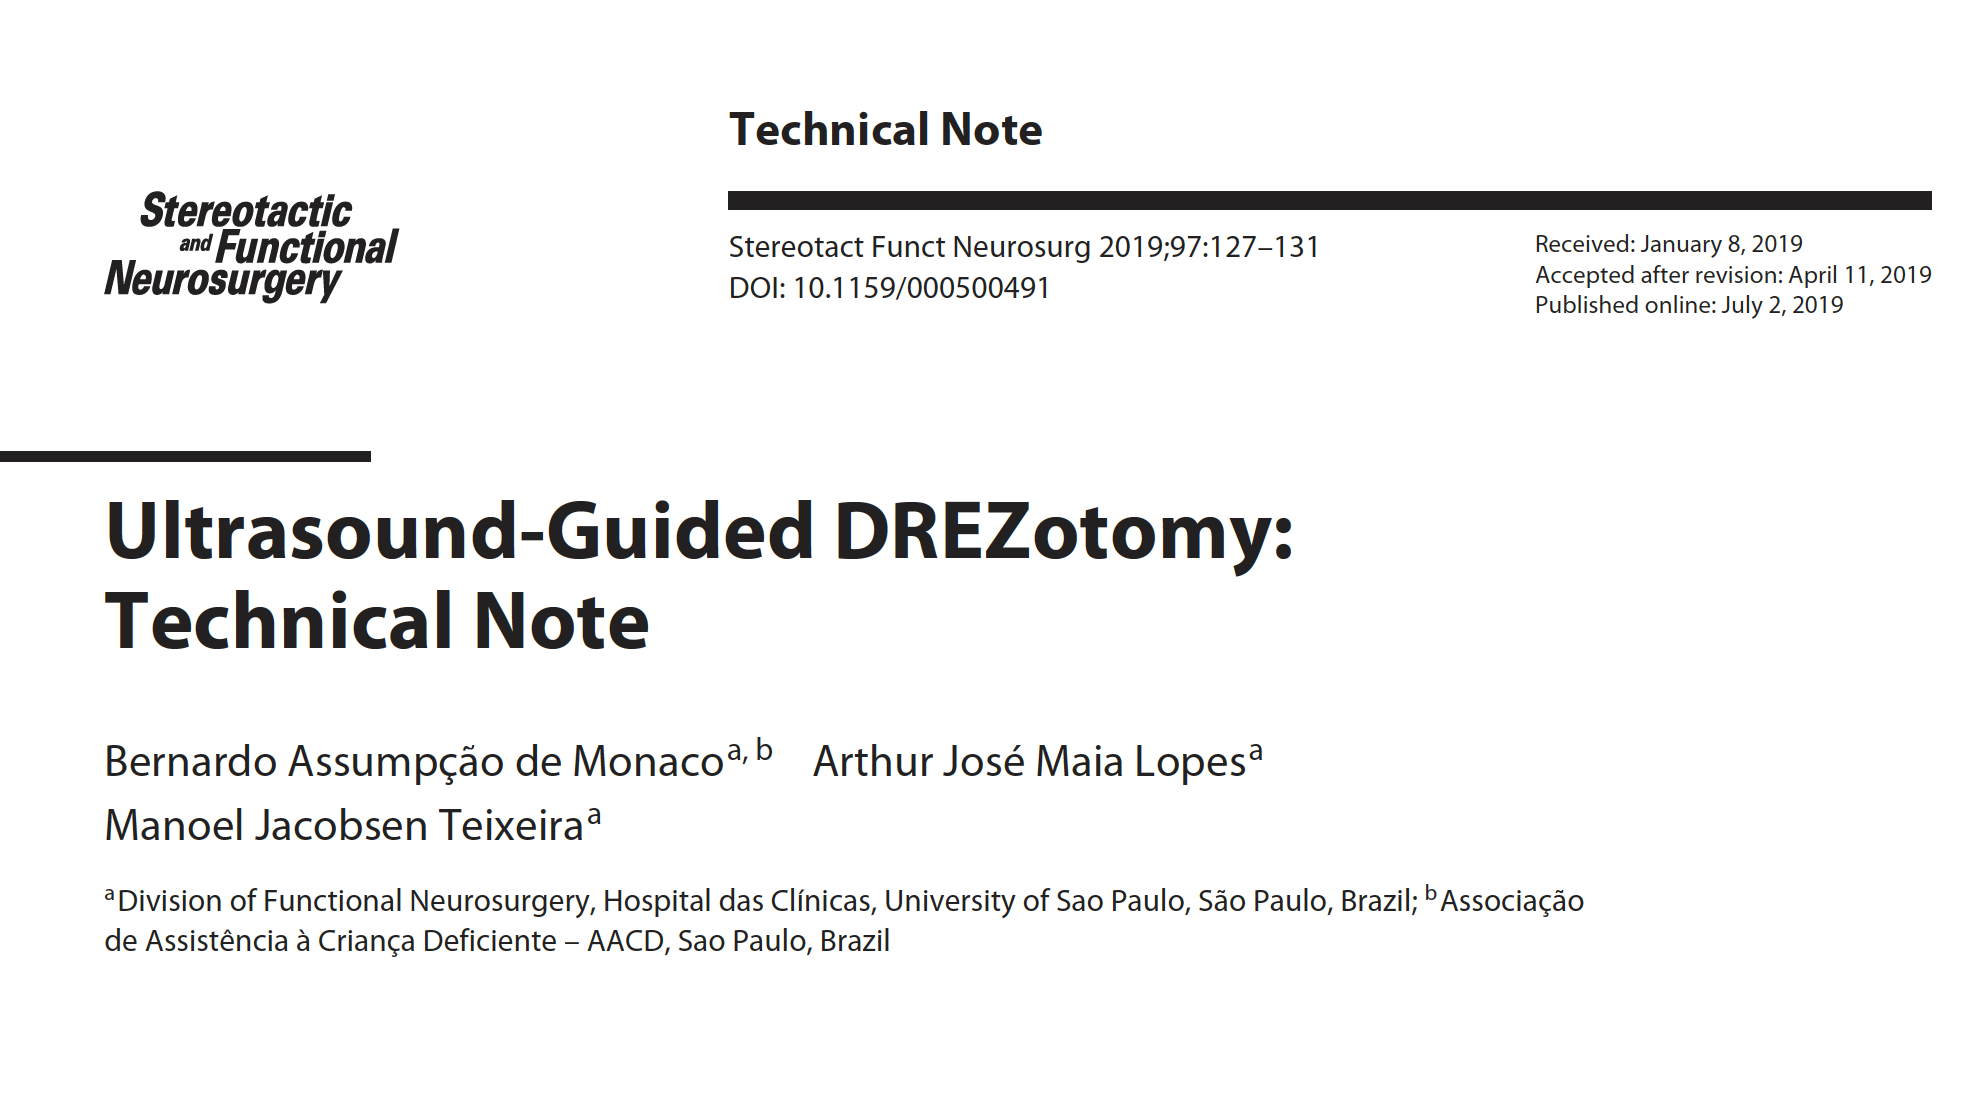 Técnica de DREZ descrita pelo Dr. Monaco com utilização de ultrassonografia intraoperatória